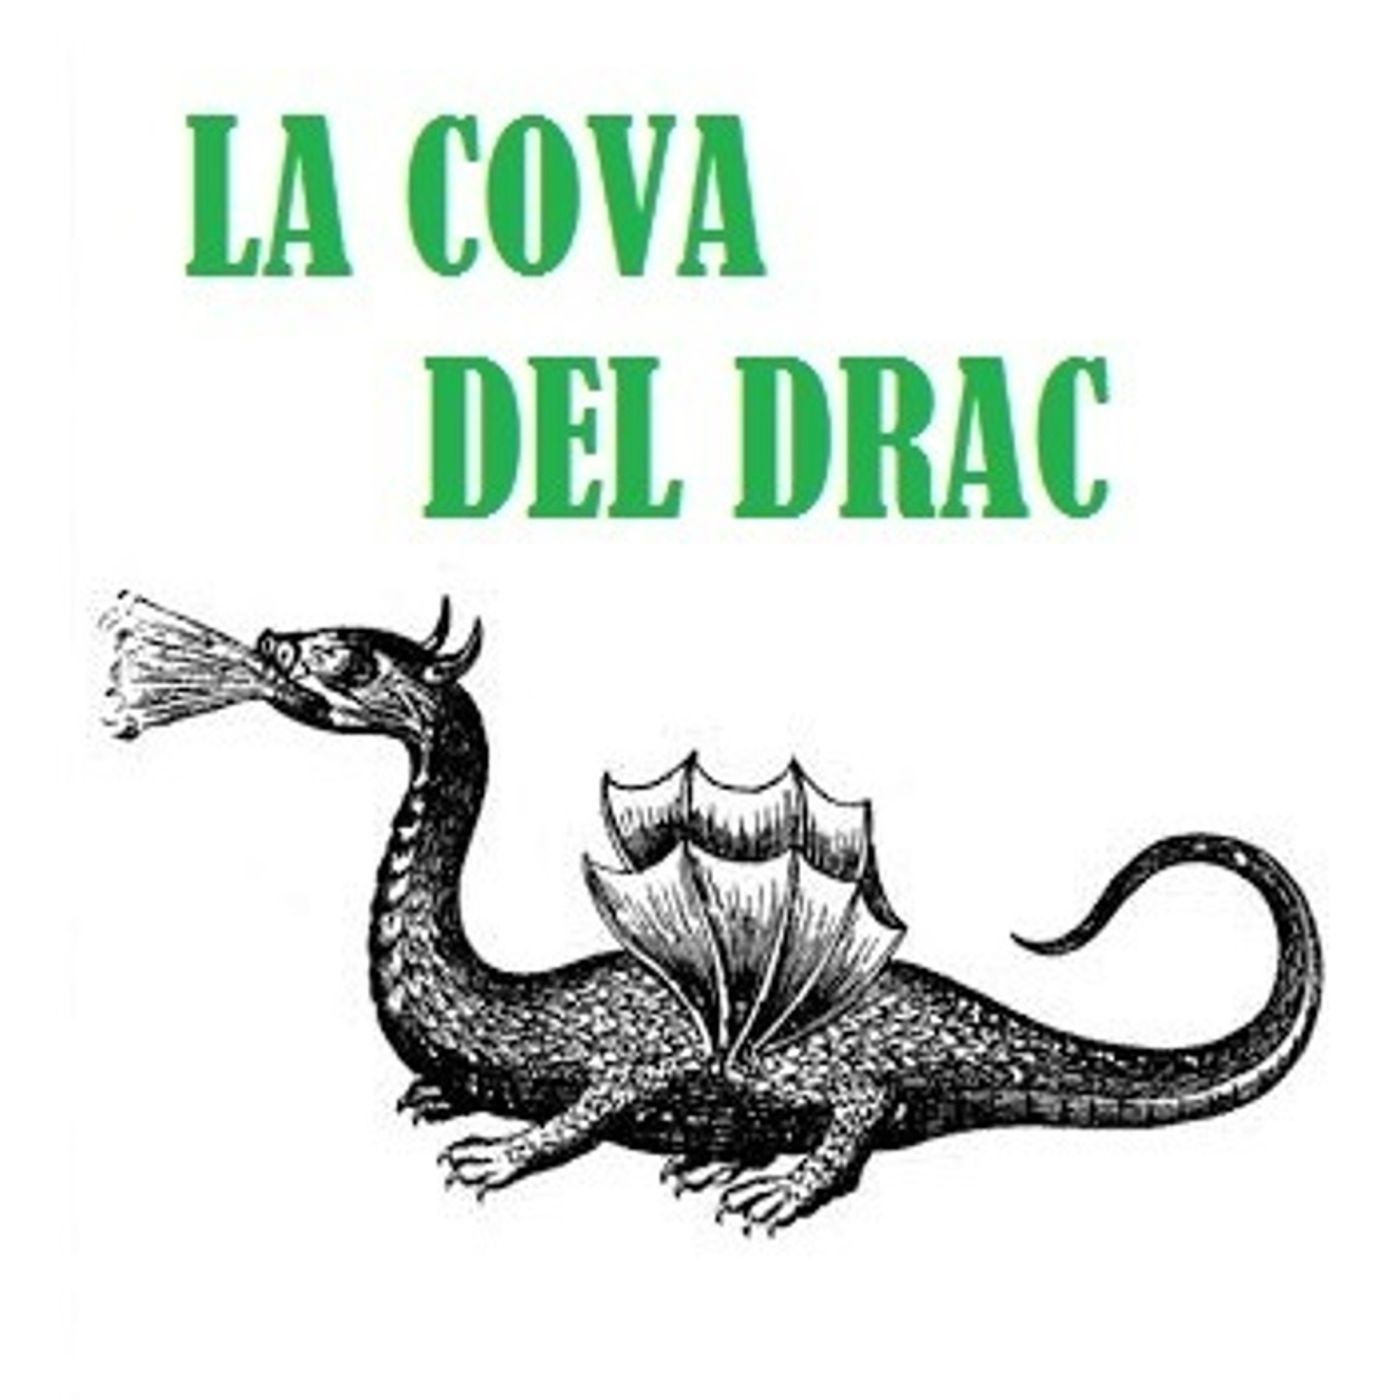 LA COVA  DEL DRAC 25-05-2018 20-00